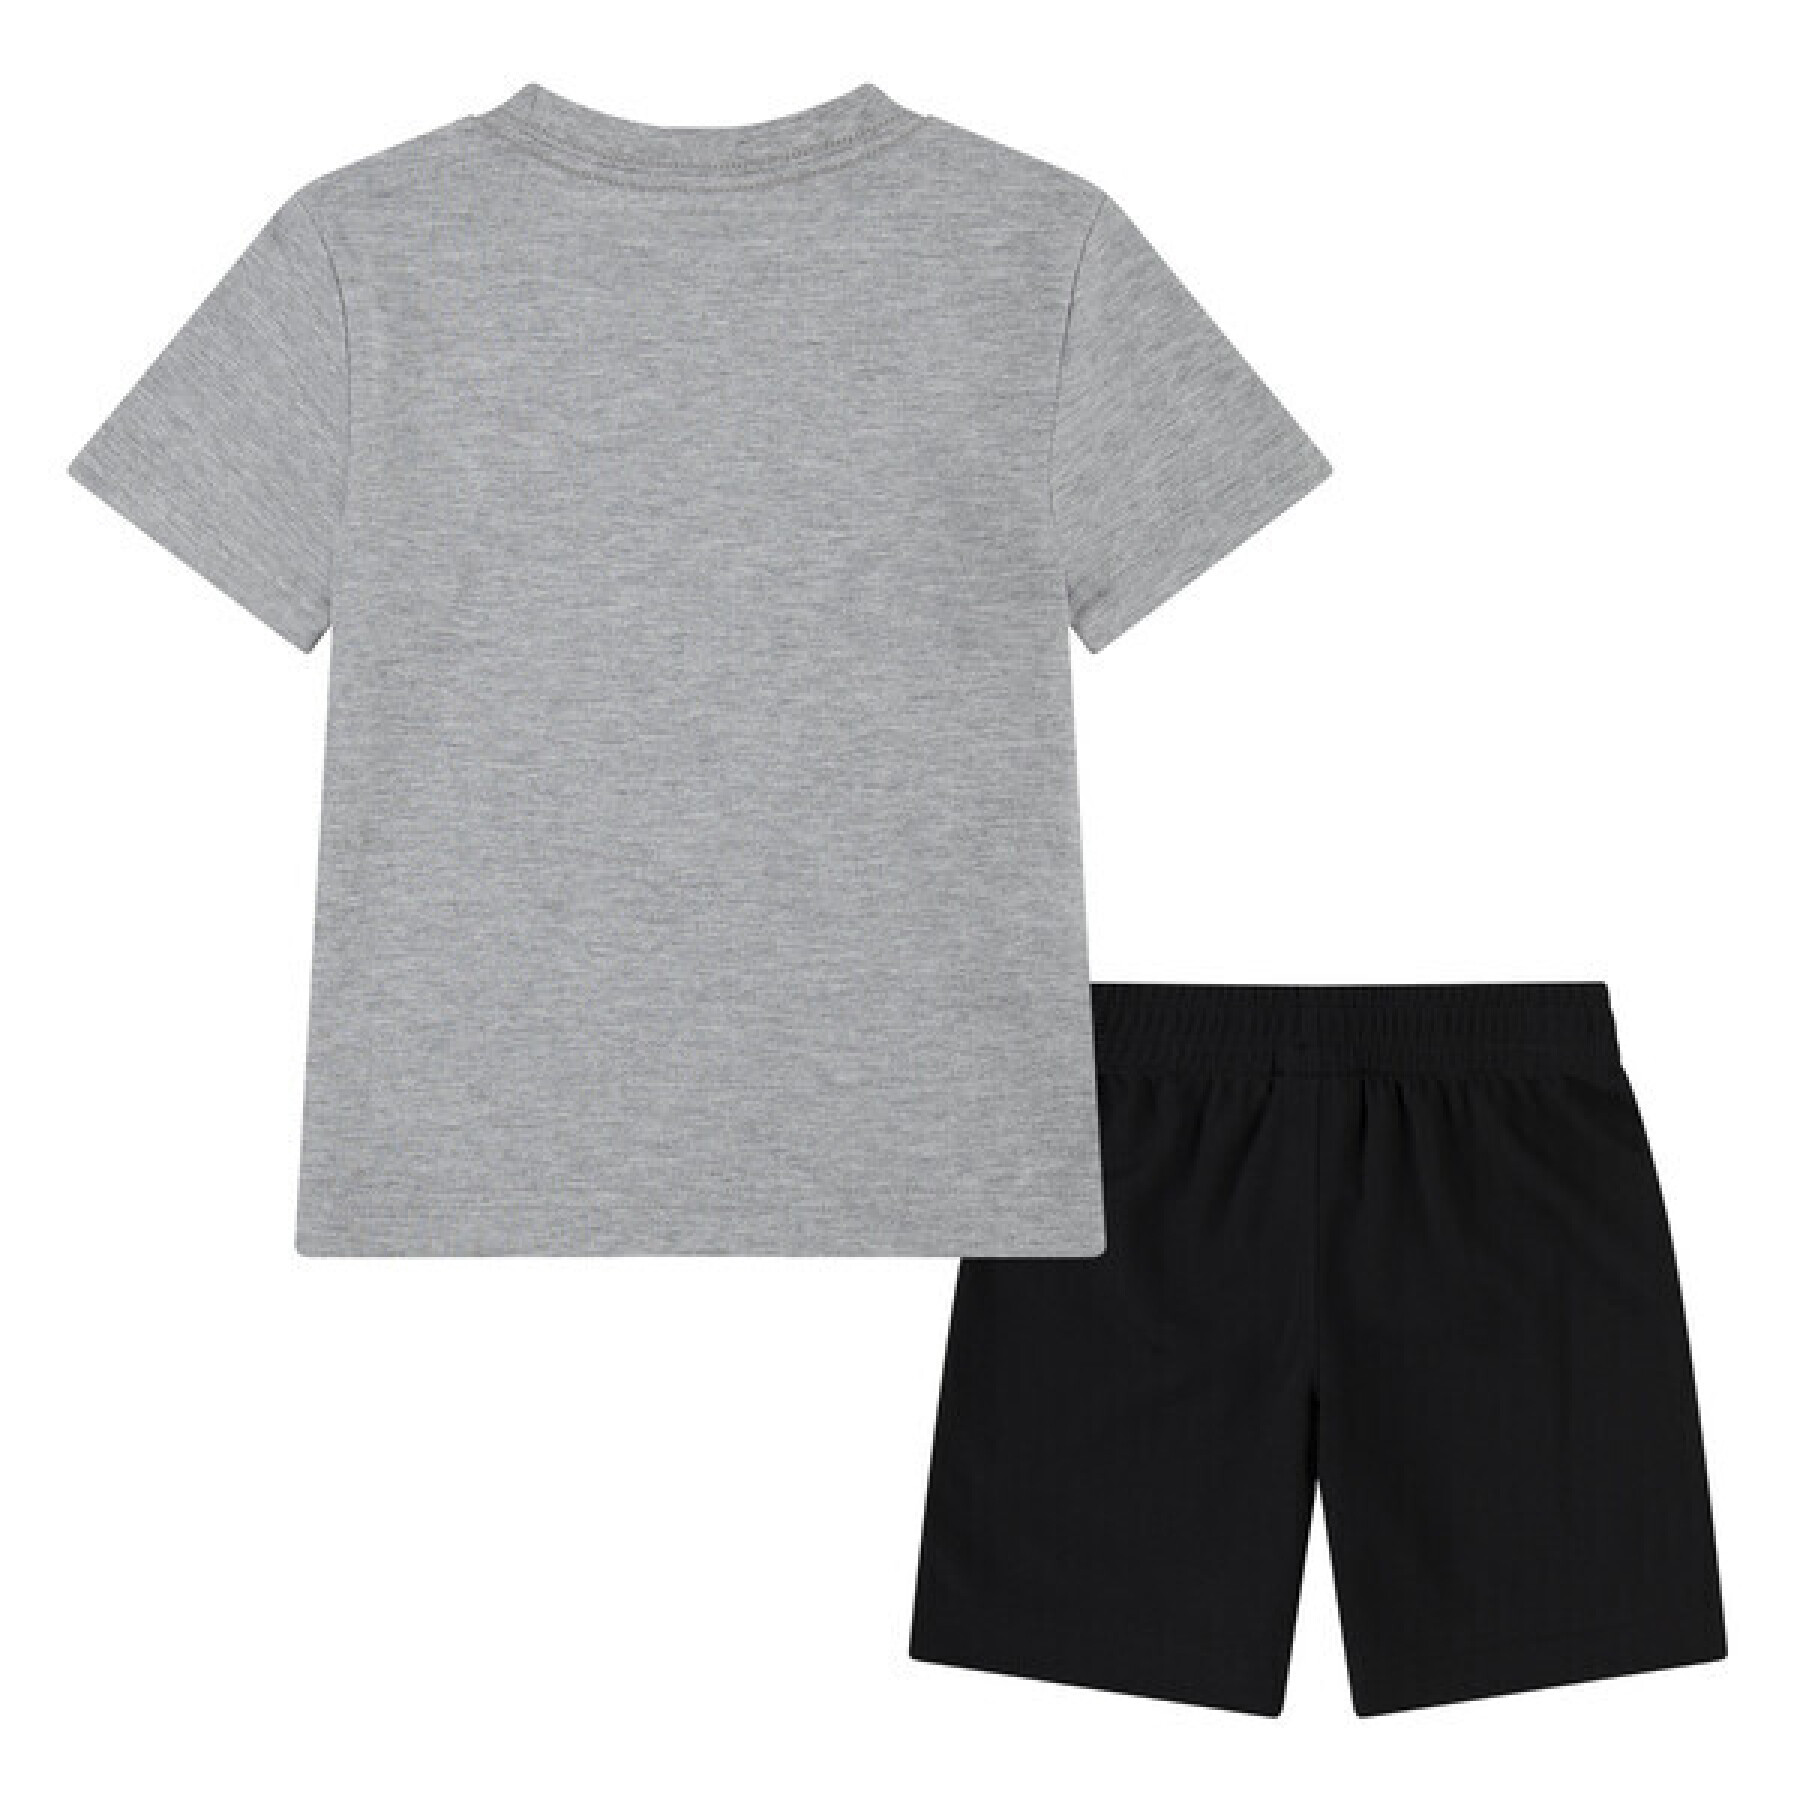 Set aus Shorts und T-Shirt für Kinder Nike GFX FT